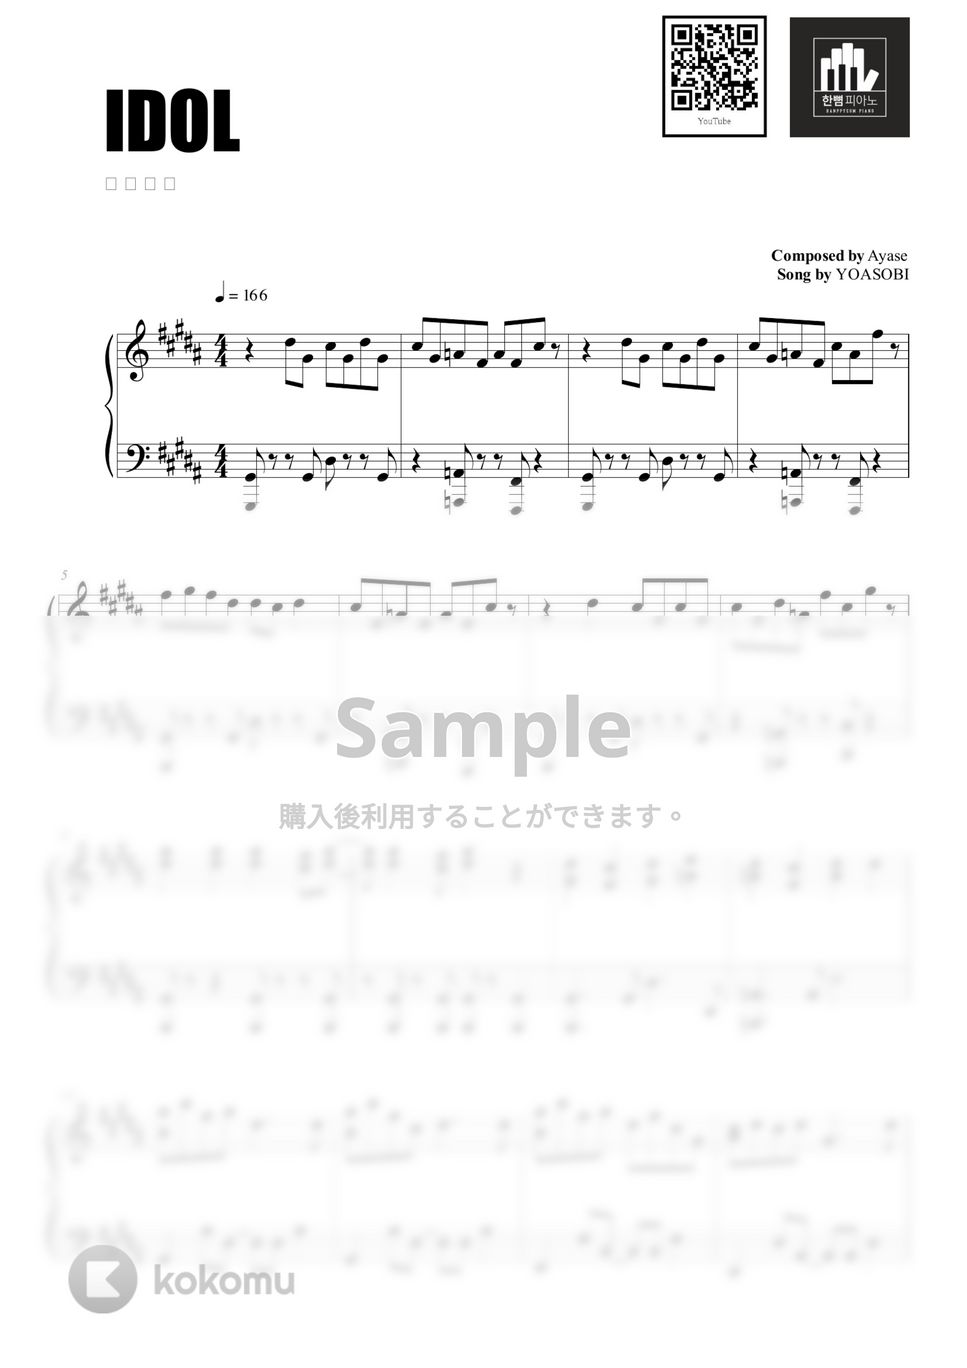 YOASOBI - アイドル (PIANO COVER) by HANPPYEOMPIANO